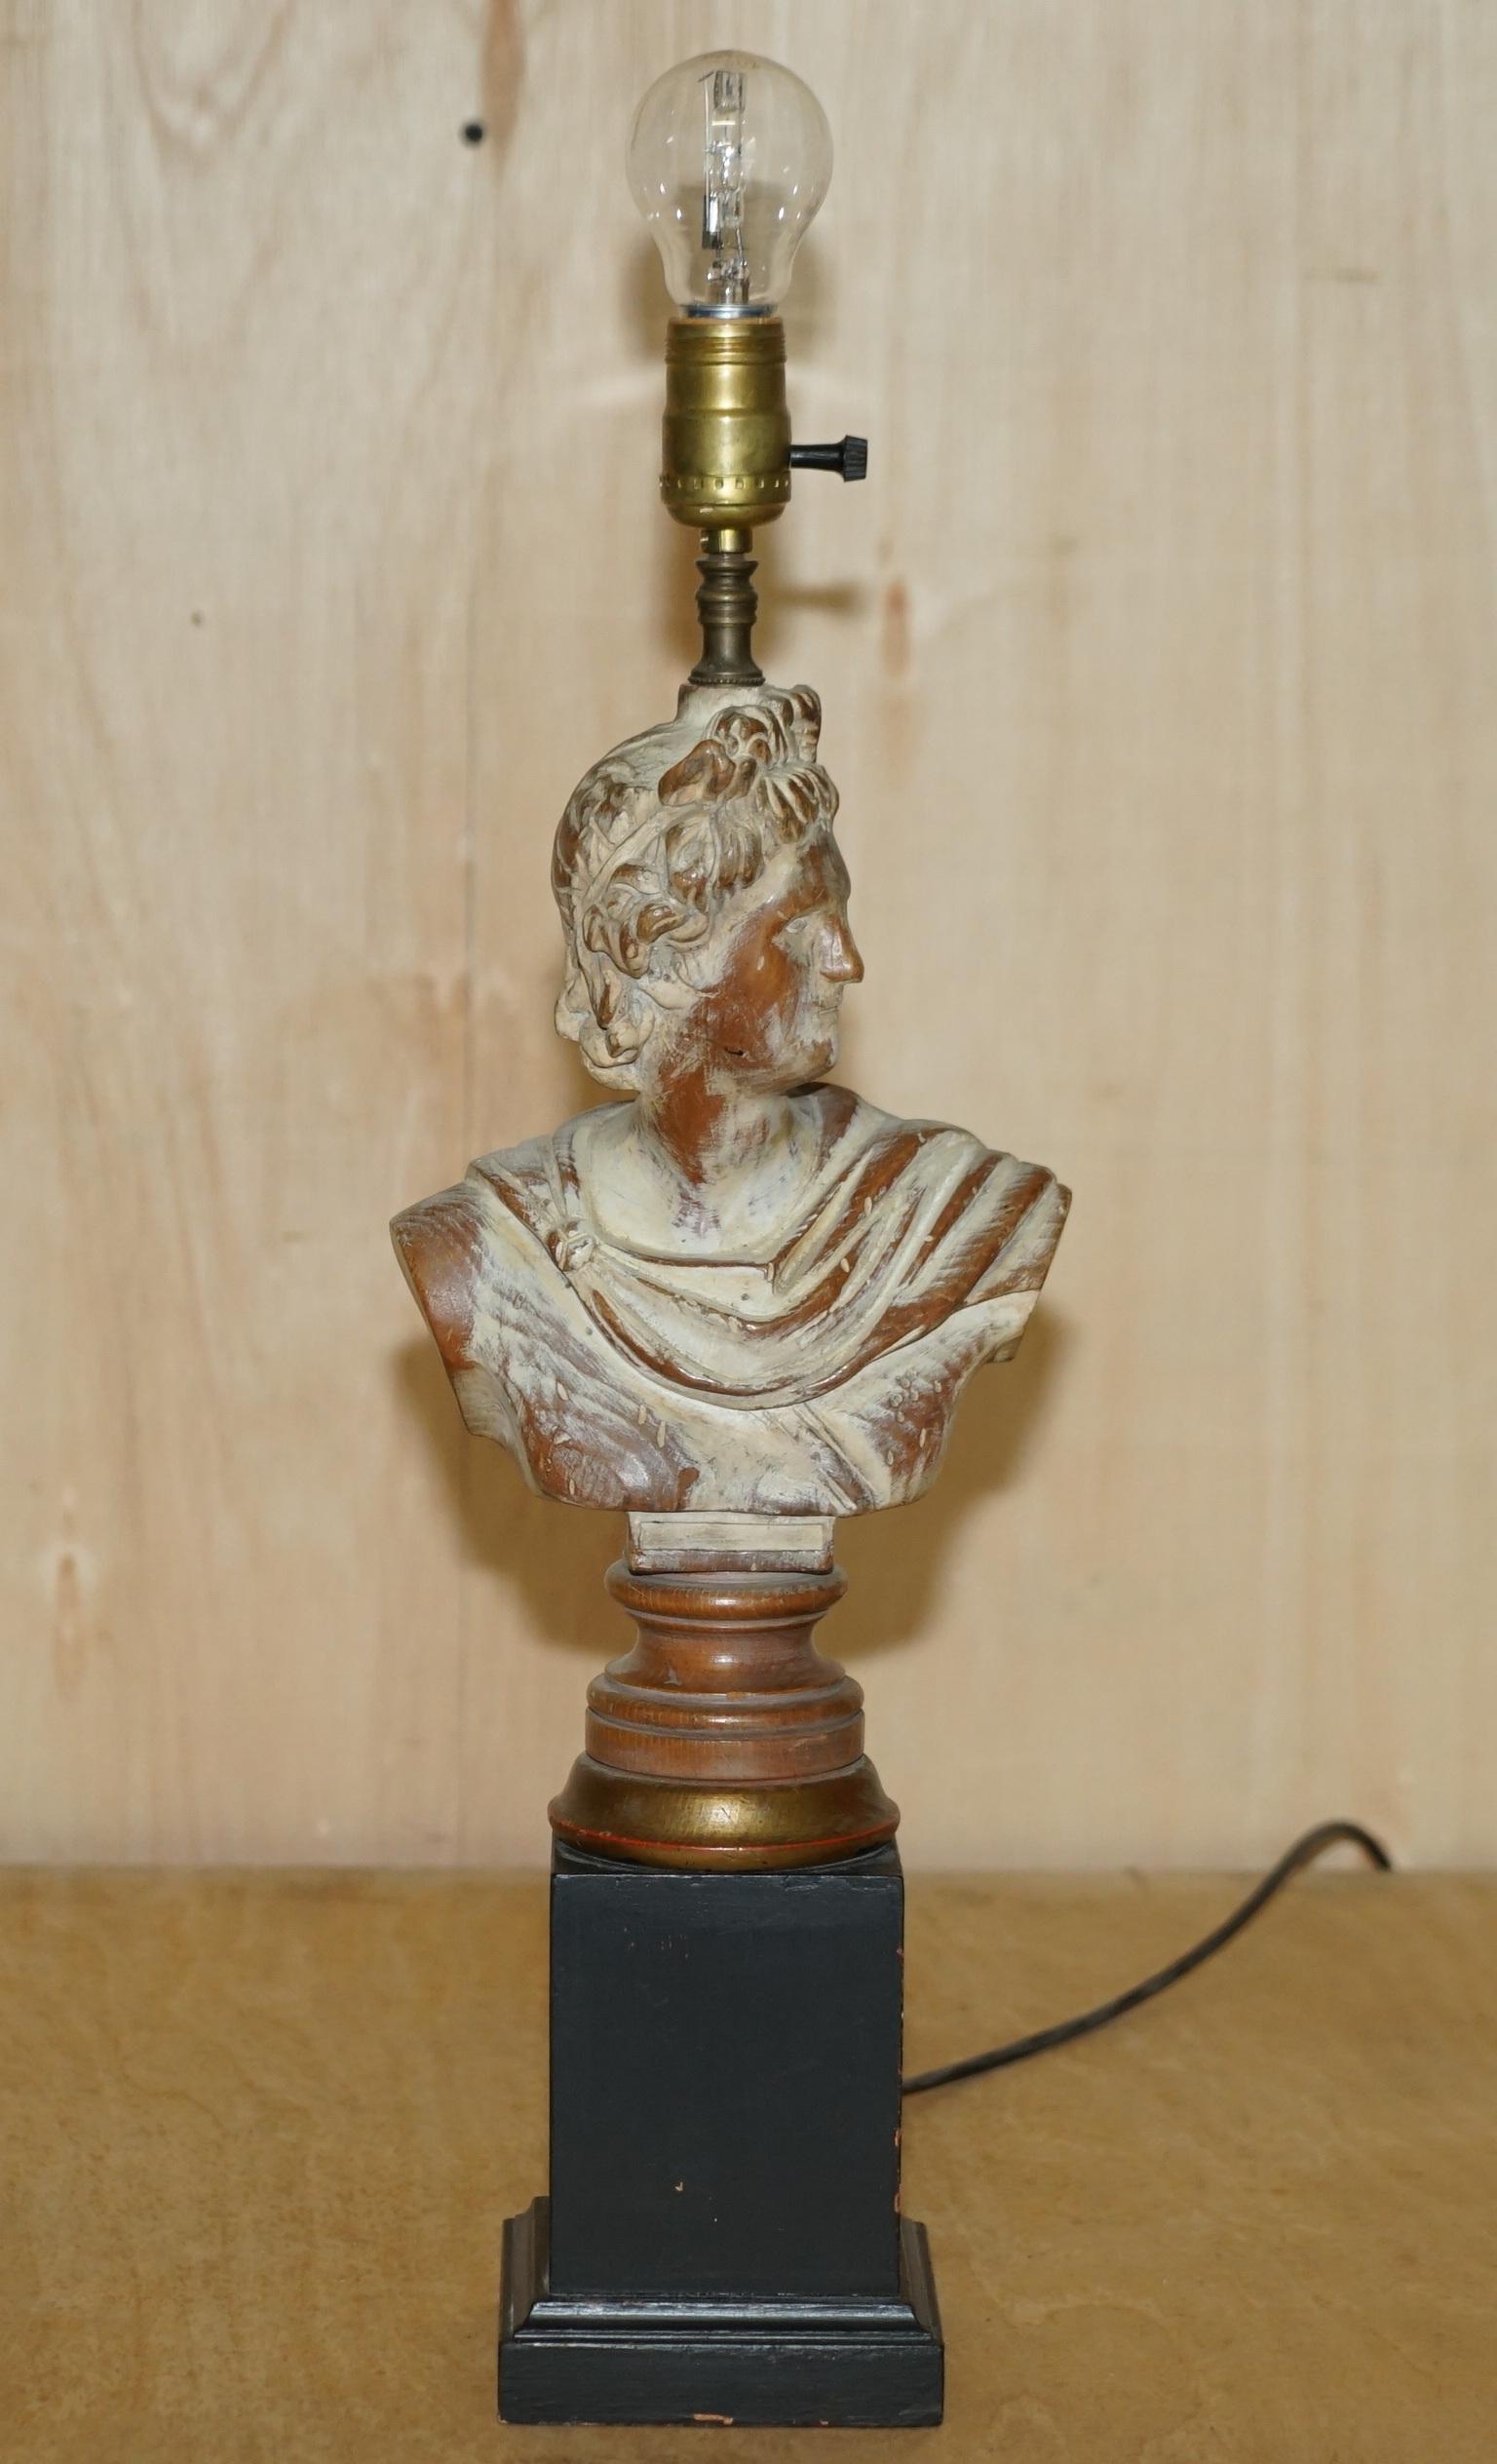 Nous sommes ravis d'offrir à la vente cette paire de lampes de table néoclassiques françaises en chêne chaulé, sculptées à la main, avec des bustes pour elle et lui

Une paire très belle et bien faite, elle est sculptée à la main dans du chêne et